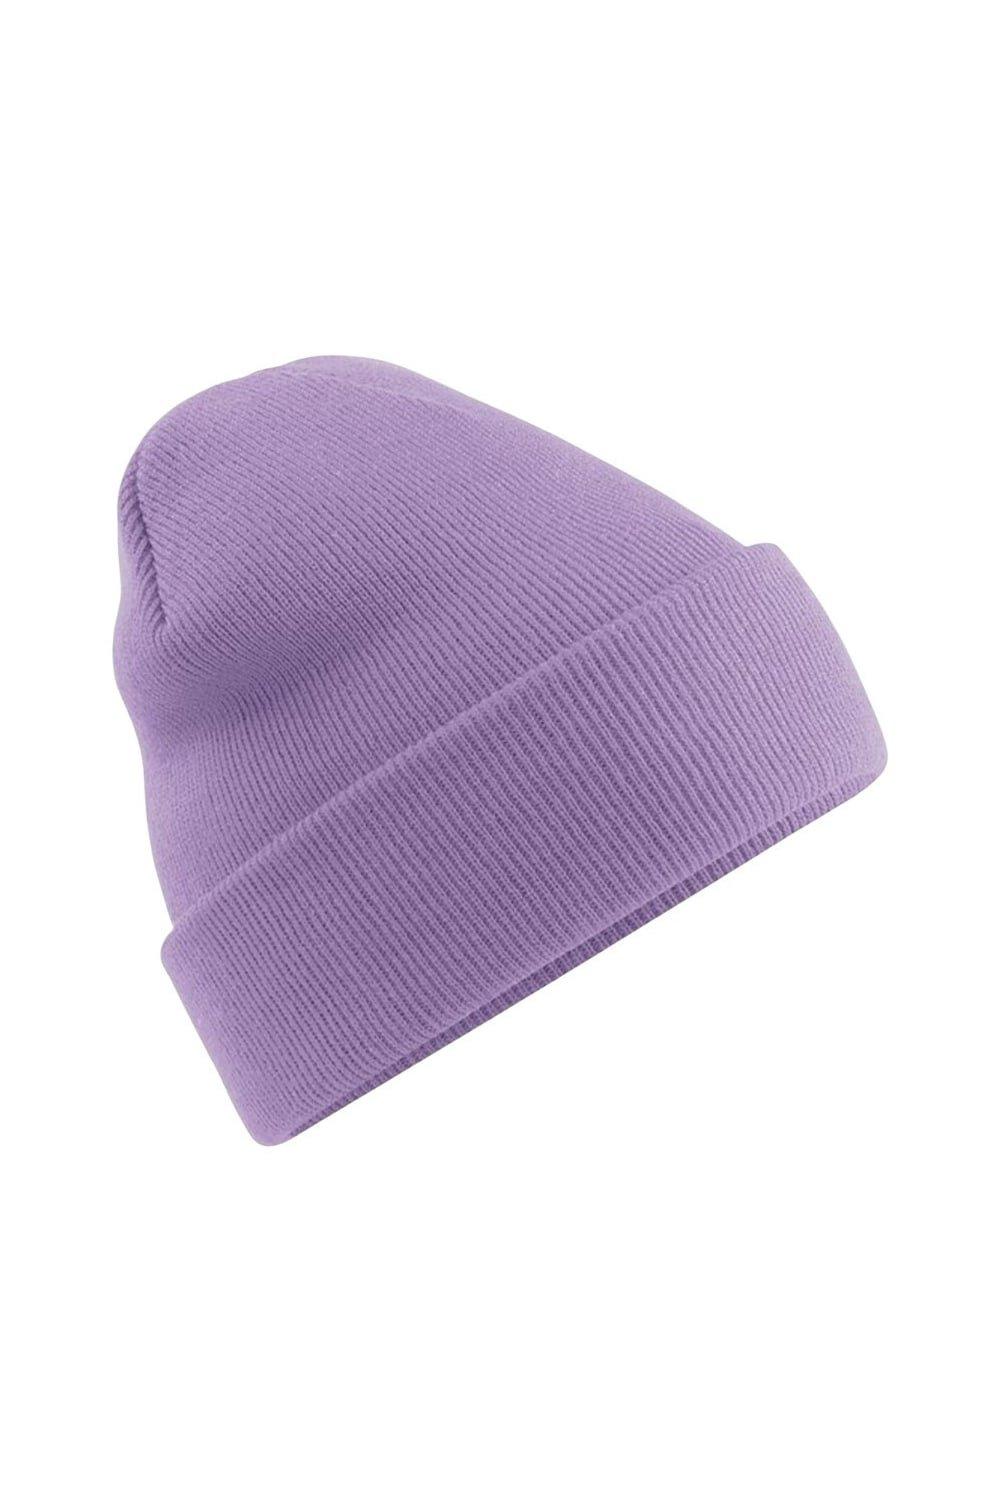 Мягкая вязаная зимняя шапка Beechfield, фиолетовый шапка burton зимняя вязаная размер one size фиолетовый черный